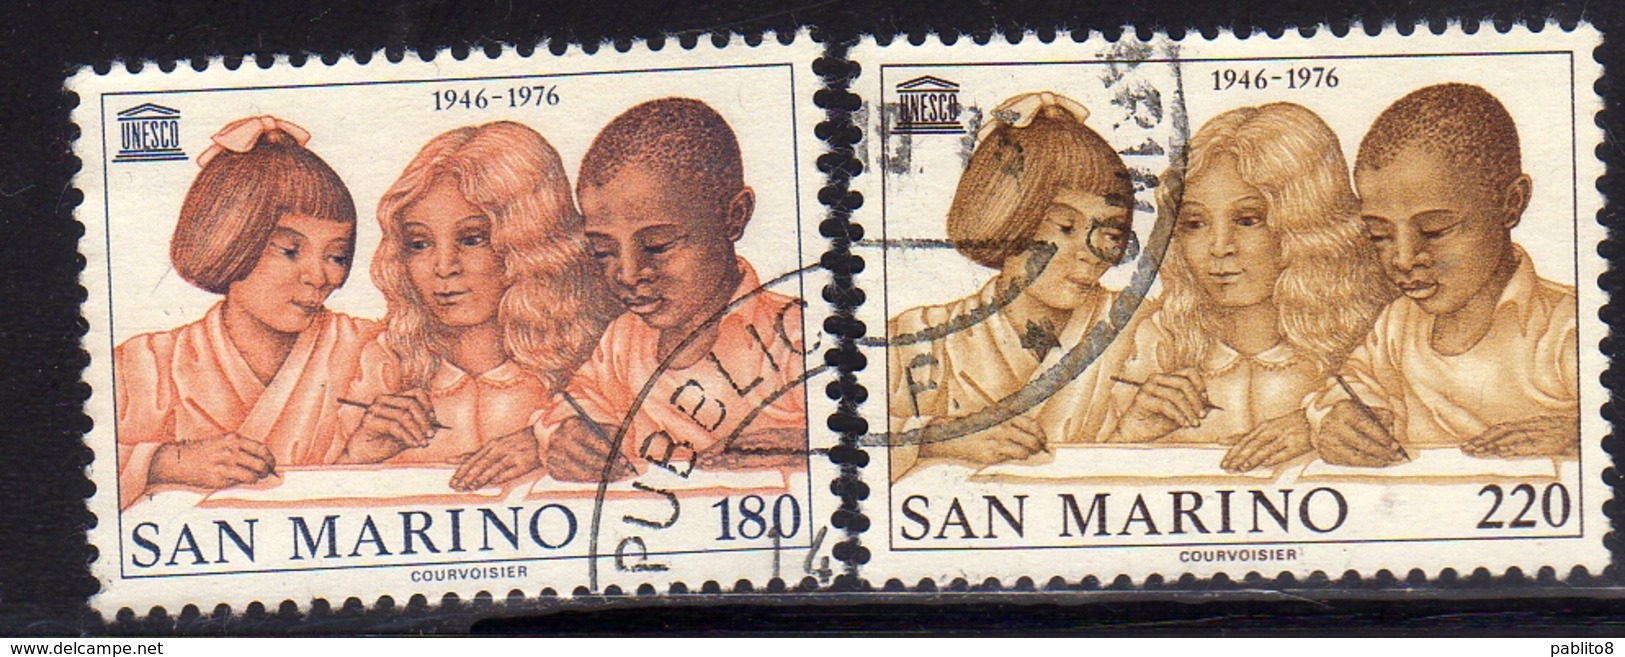 REPUBBLICA DI SAN MARINO 1976 UNESCO SERIE COMPLETA COMPLETE SET USATA USED OBLITERE' - Used Stamps